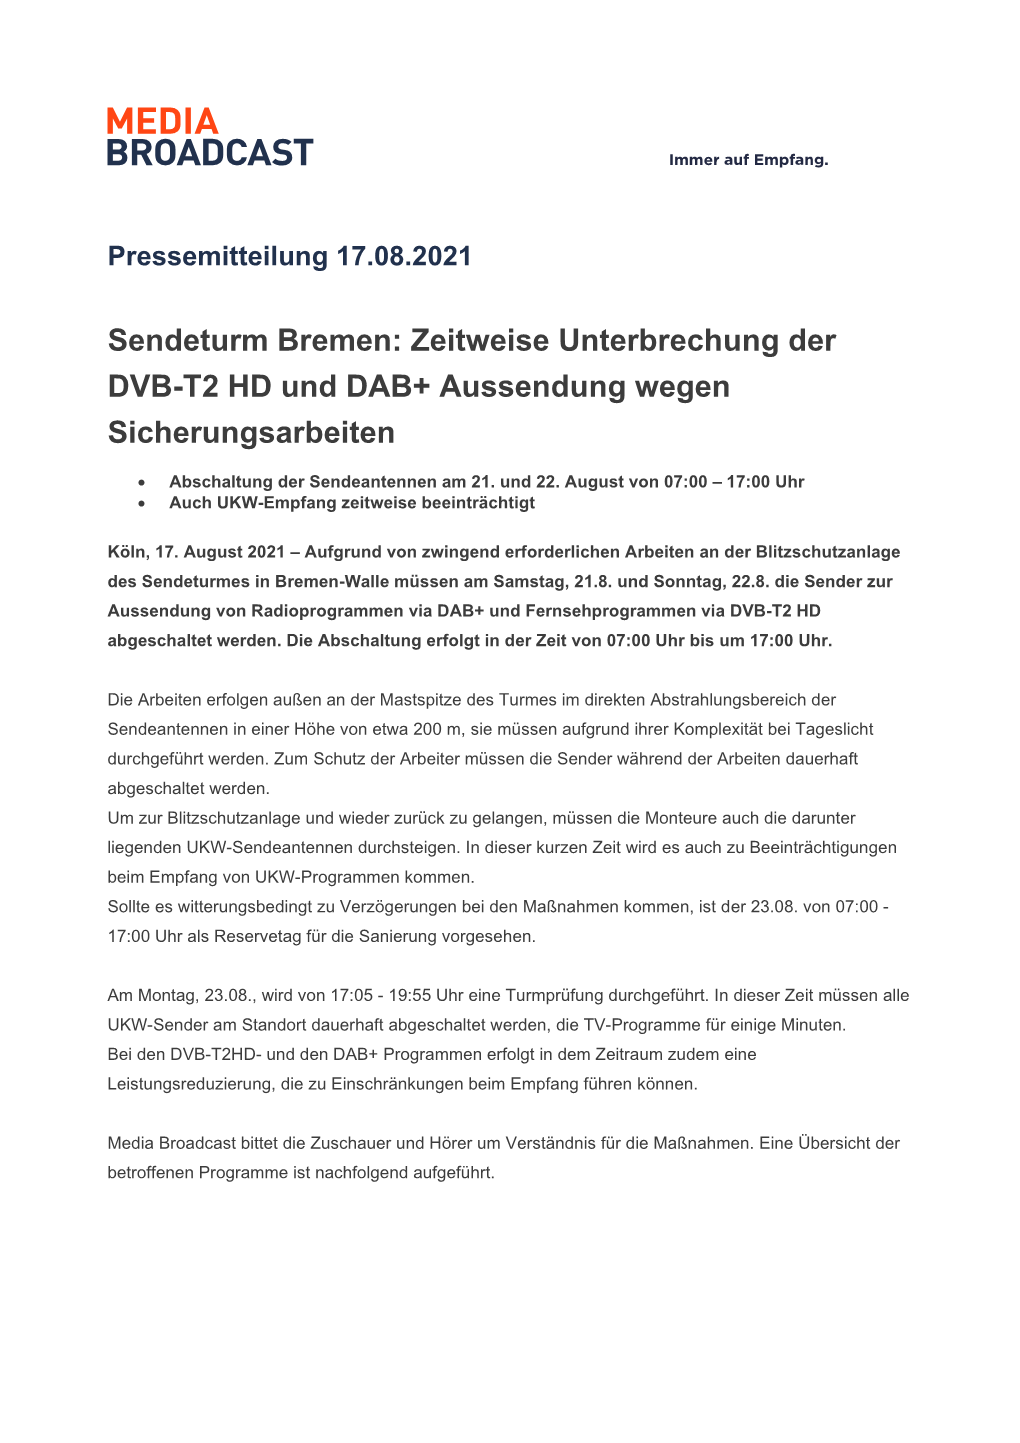 Sendeturm Bremen: Zeitweise Unterbrechung Der DVB-T2 HD Und DAB+ Aussendung Wegen Sicherungsarbeiten